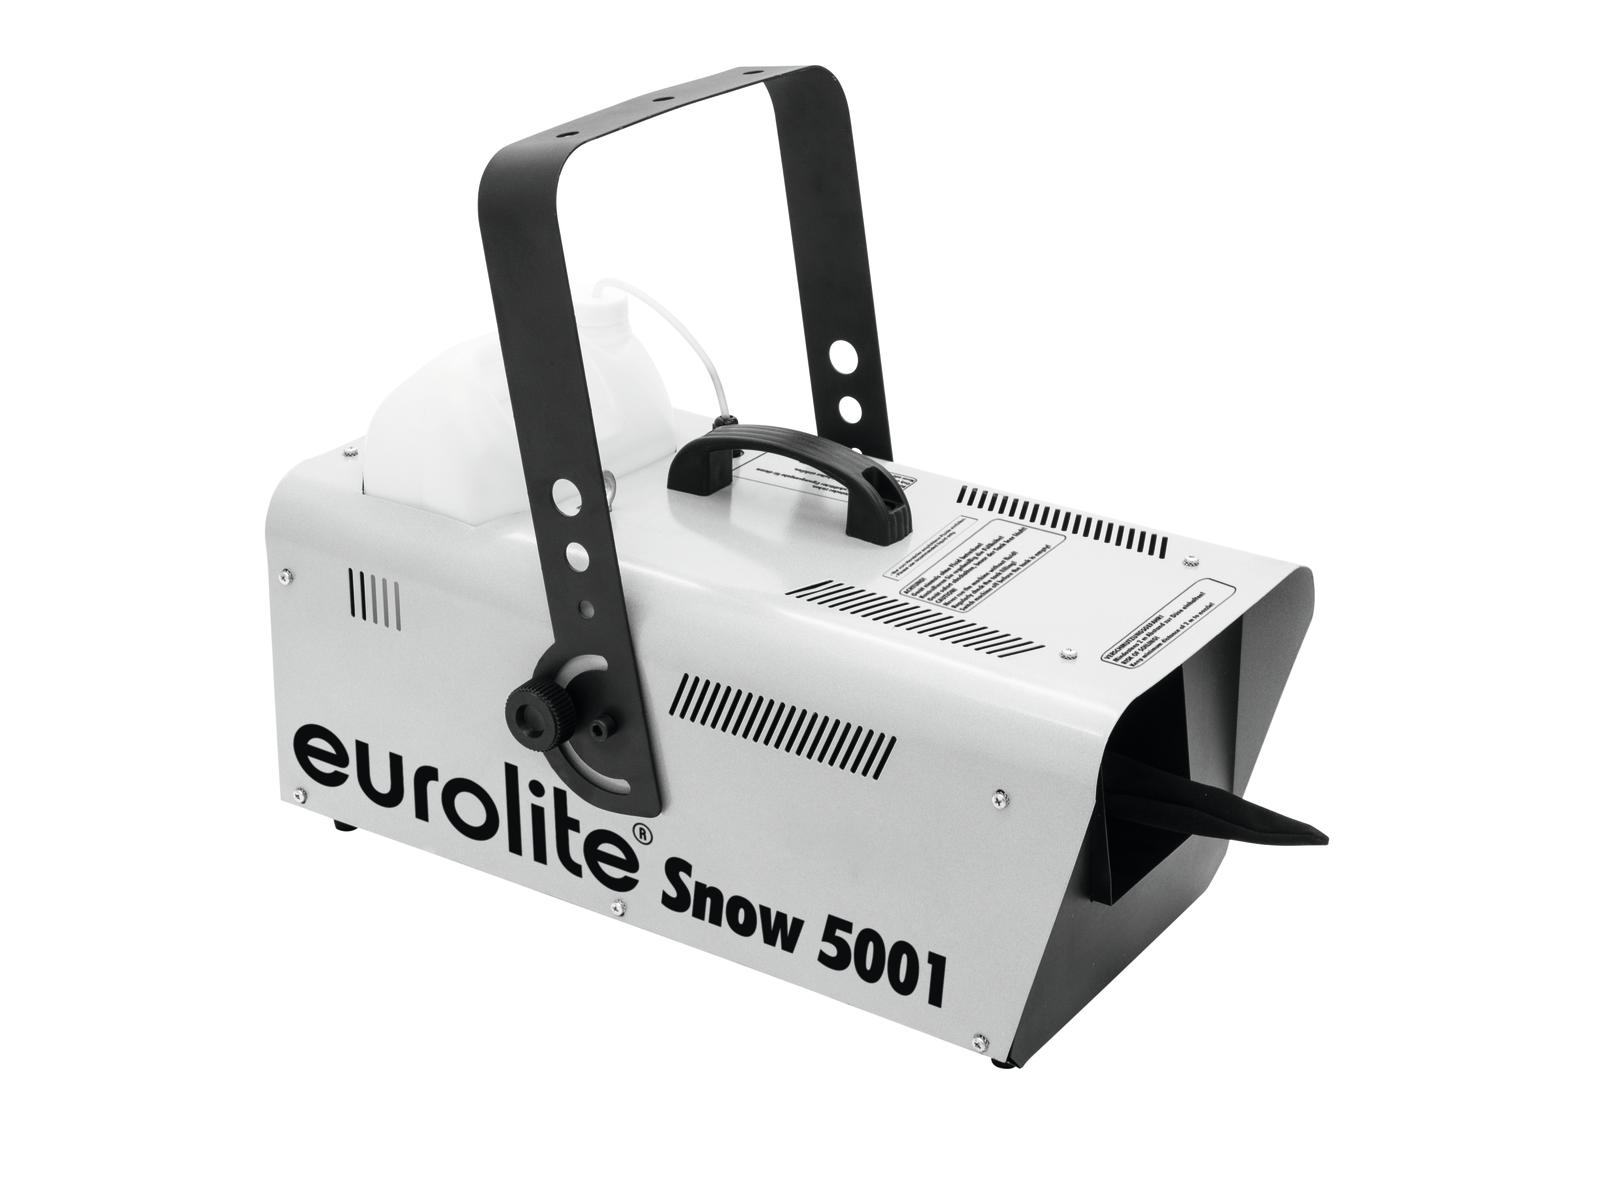 Schneemaschine Snow 5001 - 1500W - mit Fernbedienung - Ausstoß regelbar - Für Kunstschnee